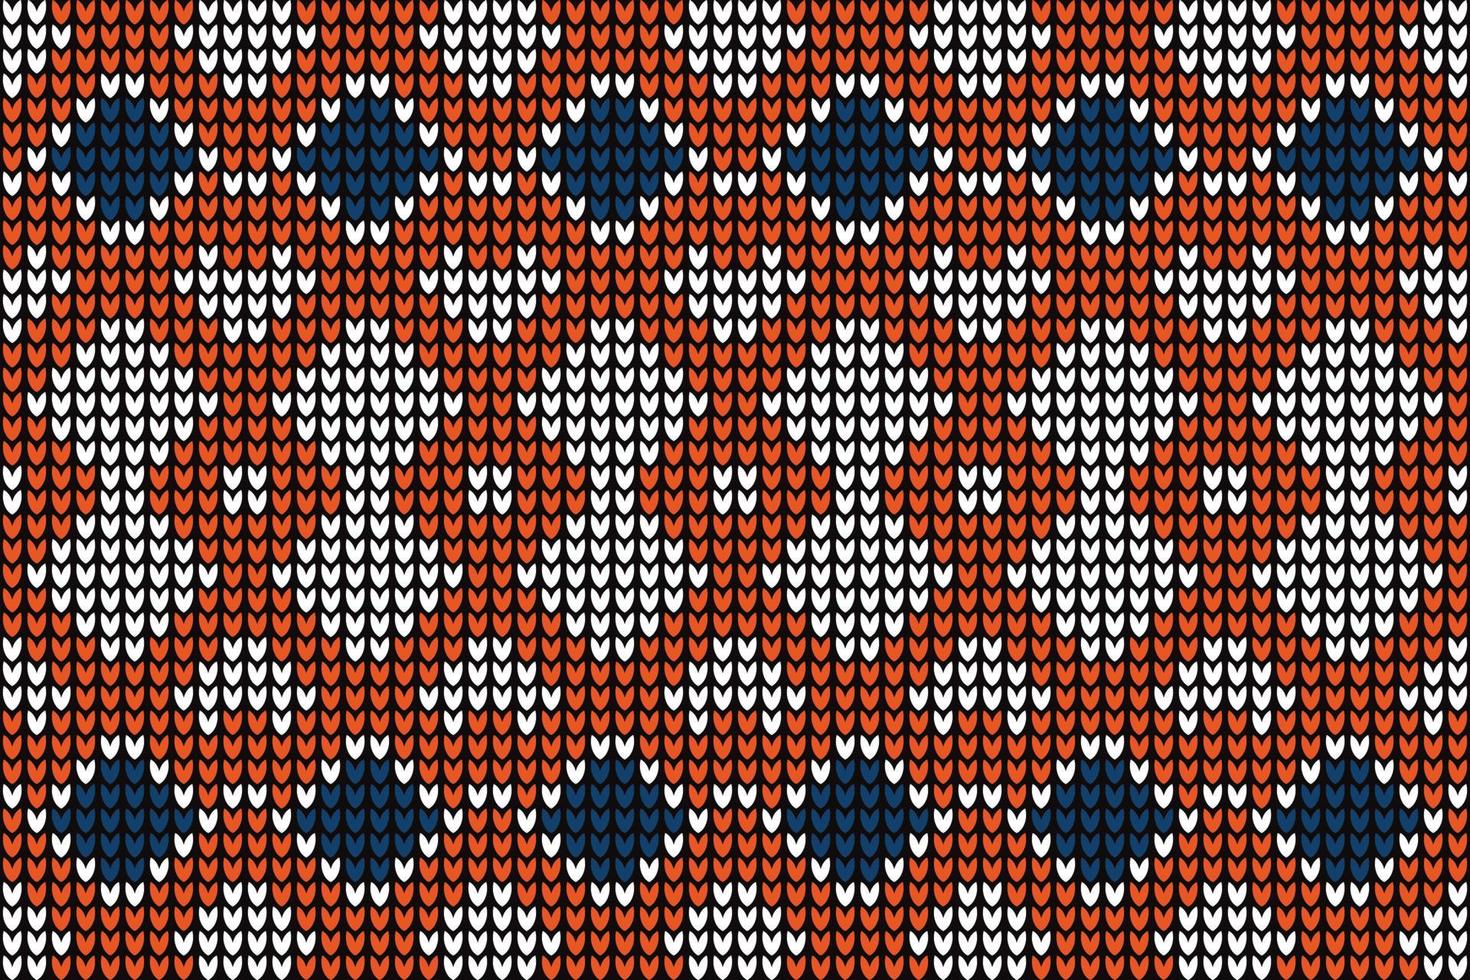 patrón de tejer tejido de punto como fondo. vector